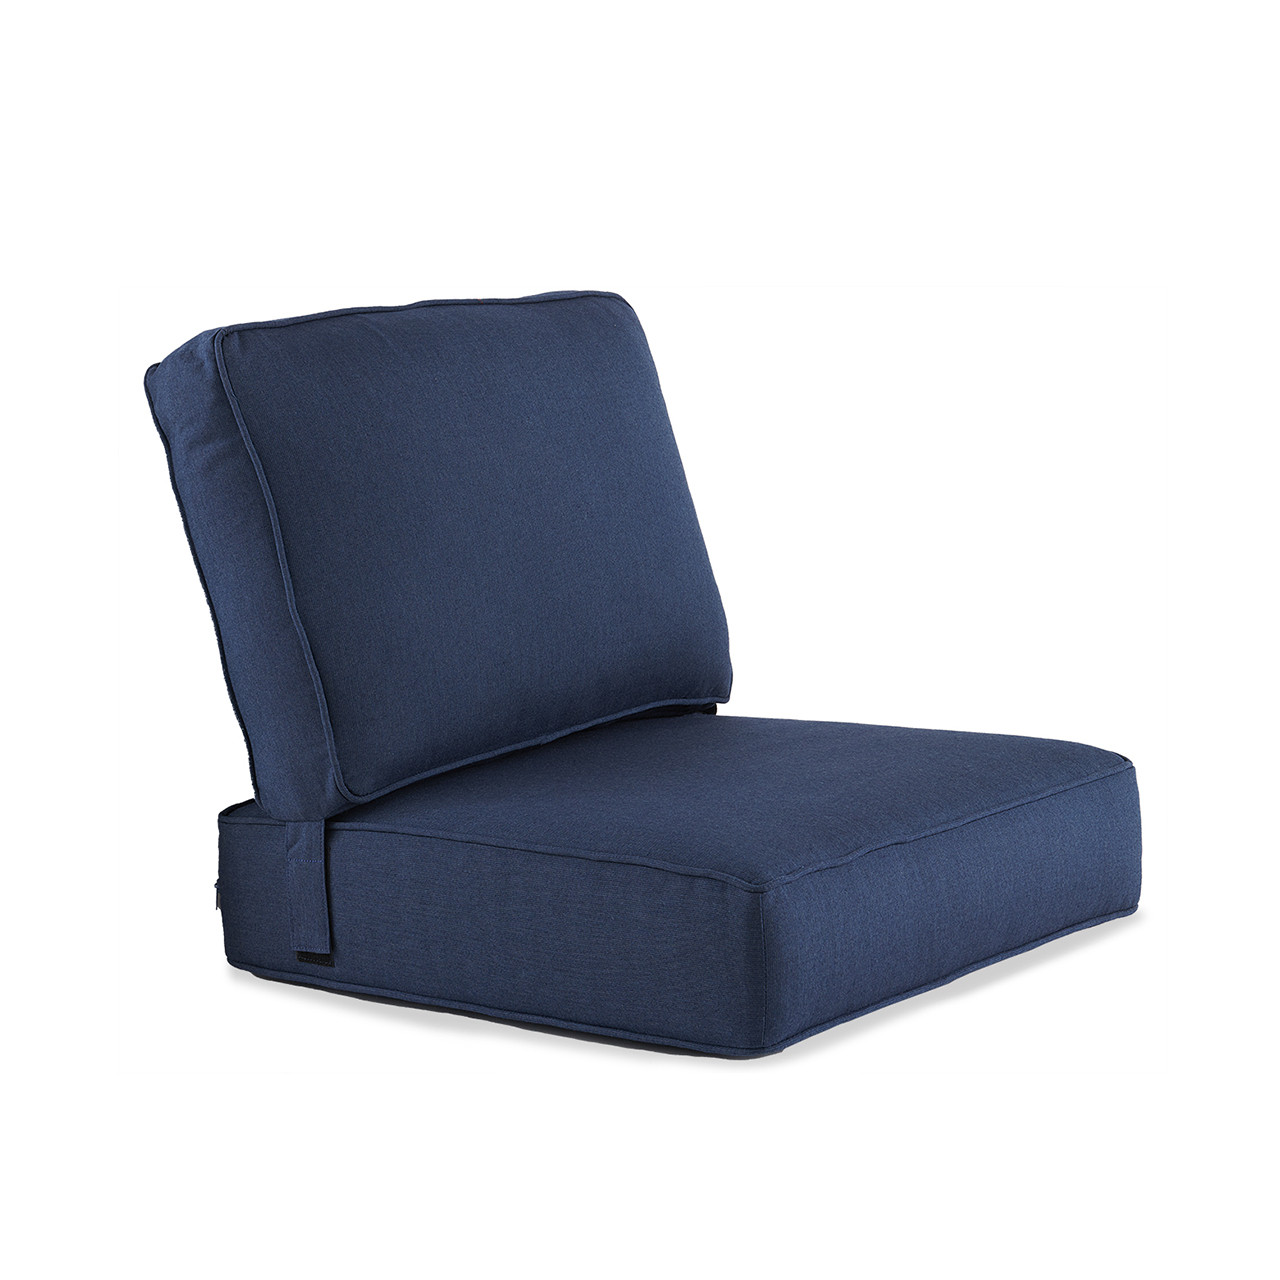 2 Piece Stanford Club Chair Cushion -